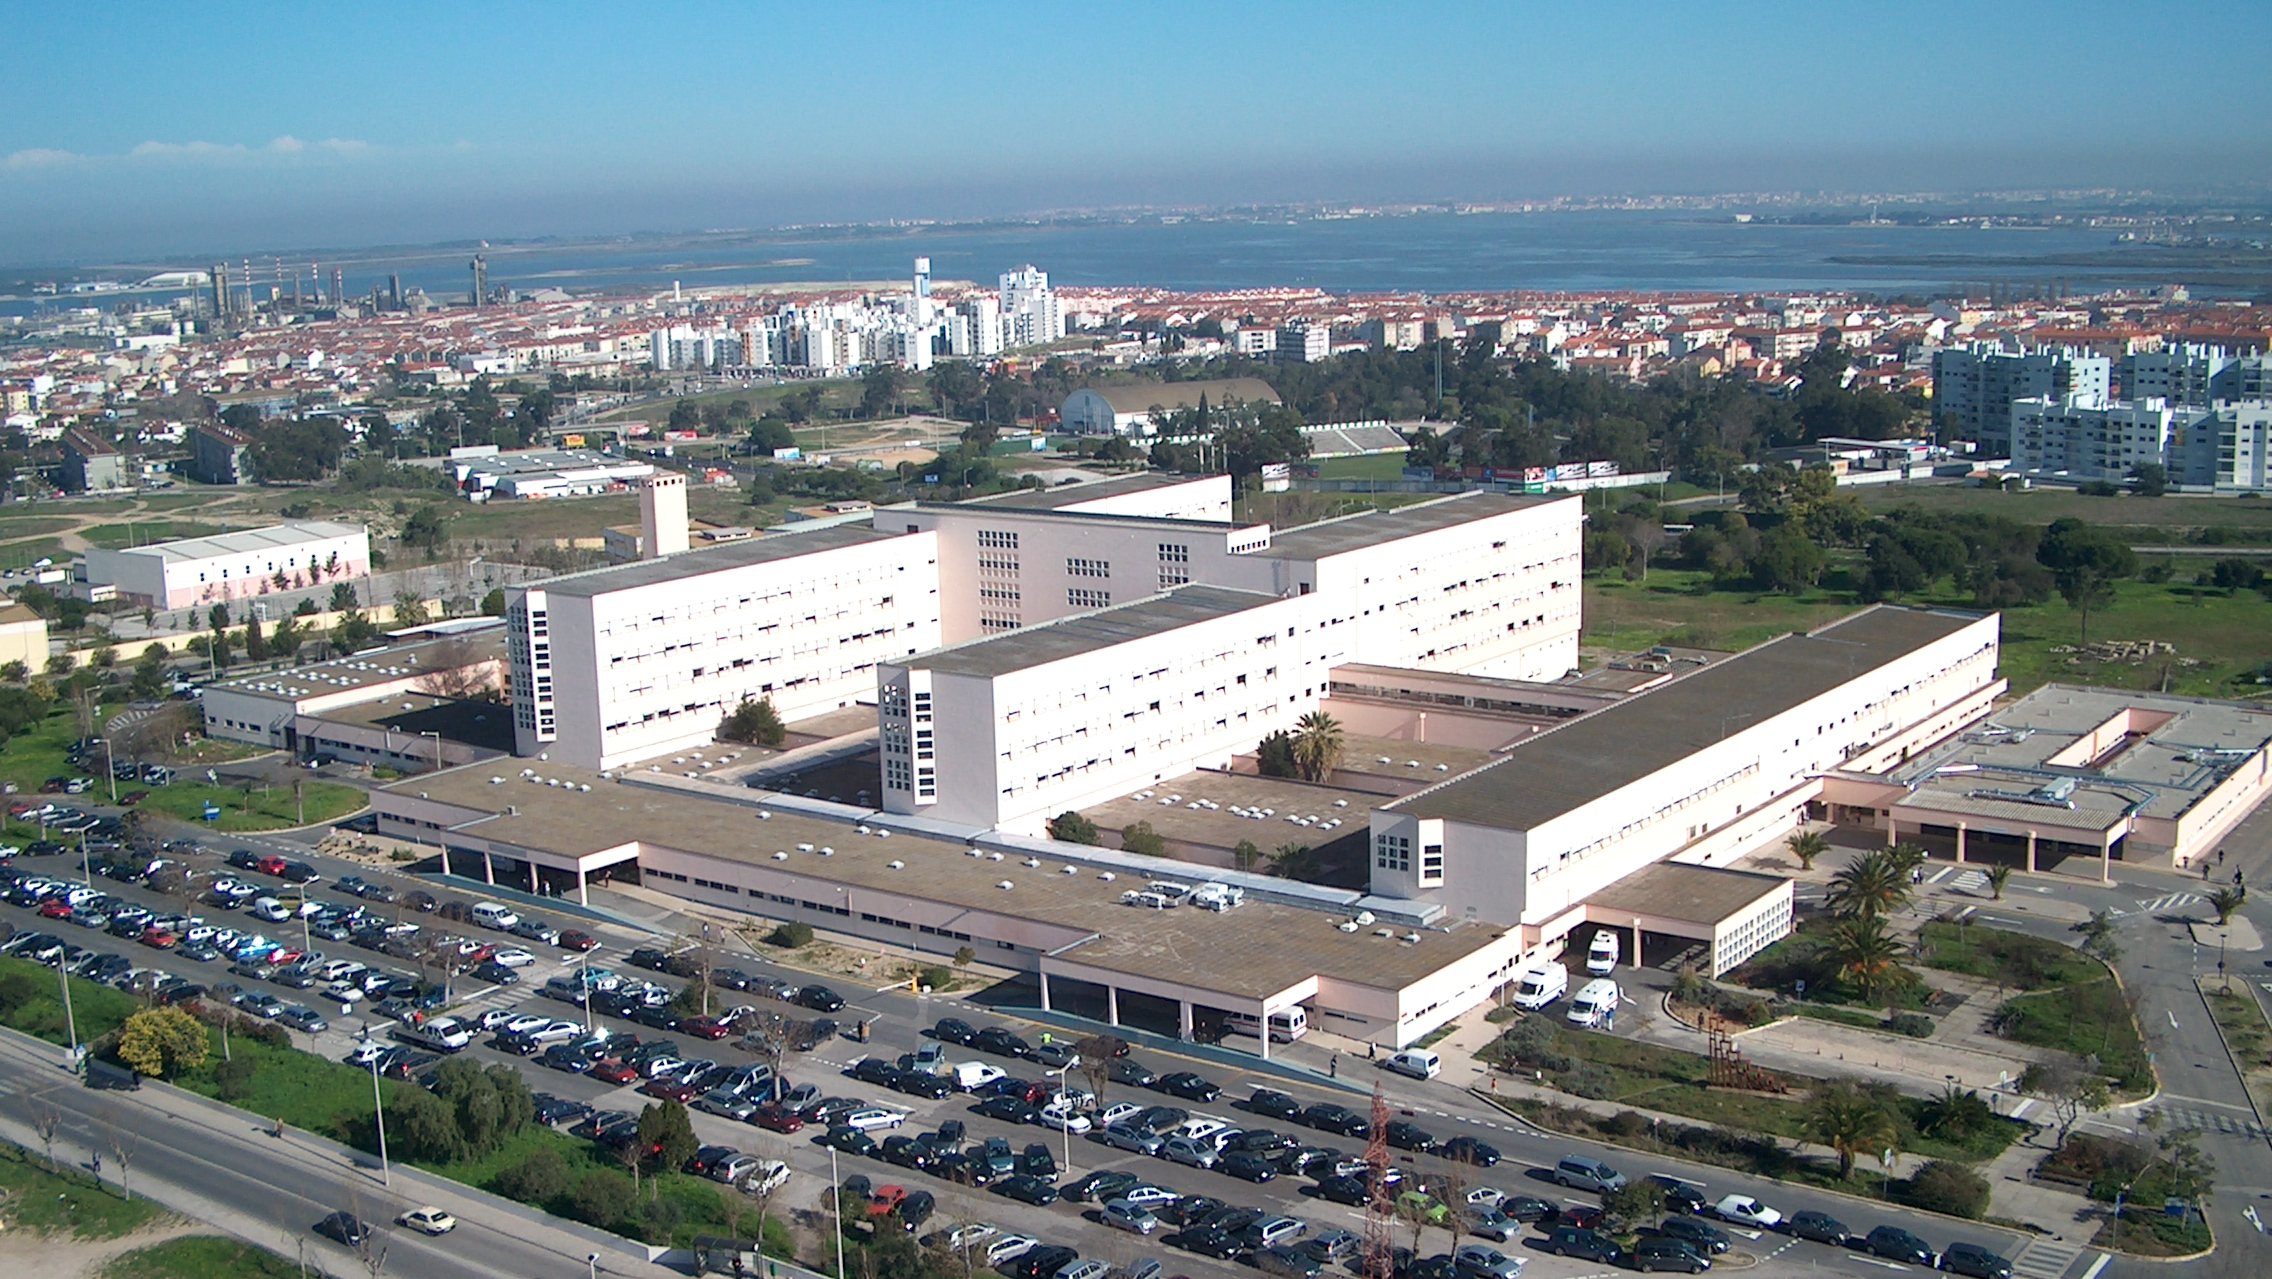 A Unidade Local de Saúde do Arco Ribeirinho integra o hospital Barreiro/Montijo e tem como áreas de influência os concelhos de Alcochete, Barreiro, Moita e Montijo e um total de 236 mil utentes